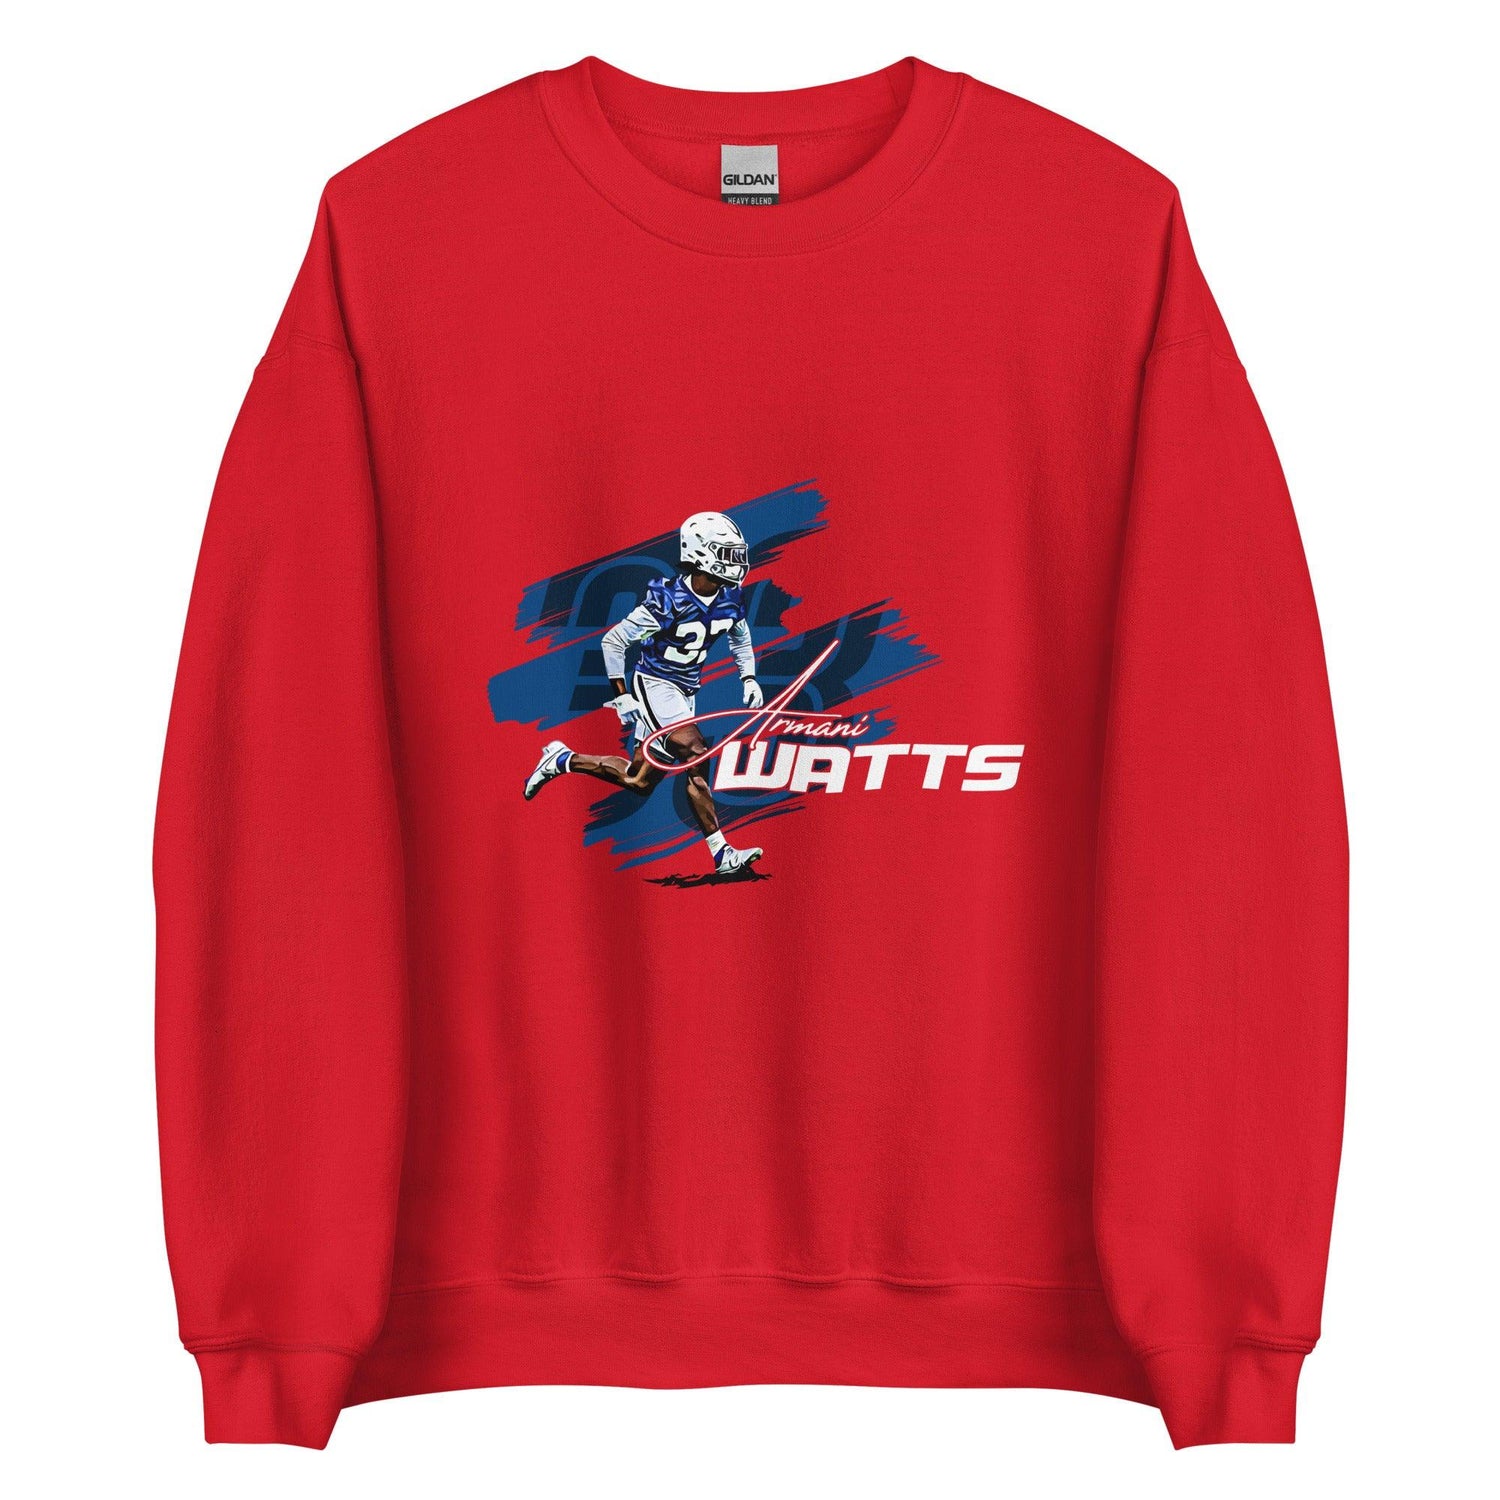 Armani Watts “33” Sweatshirt - Fan Arch